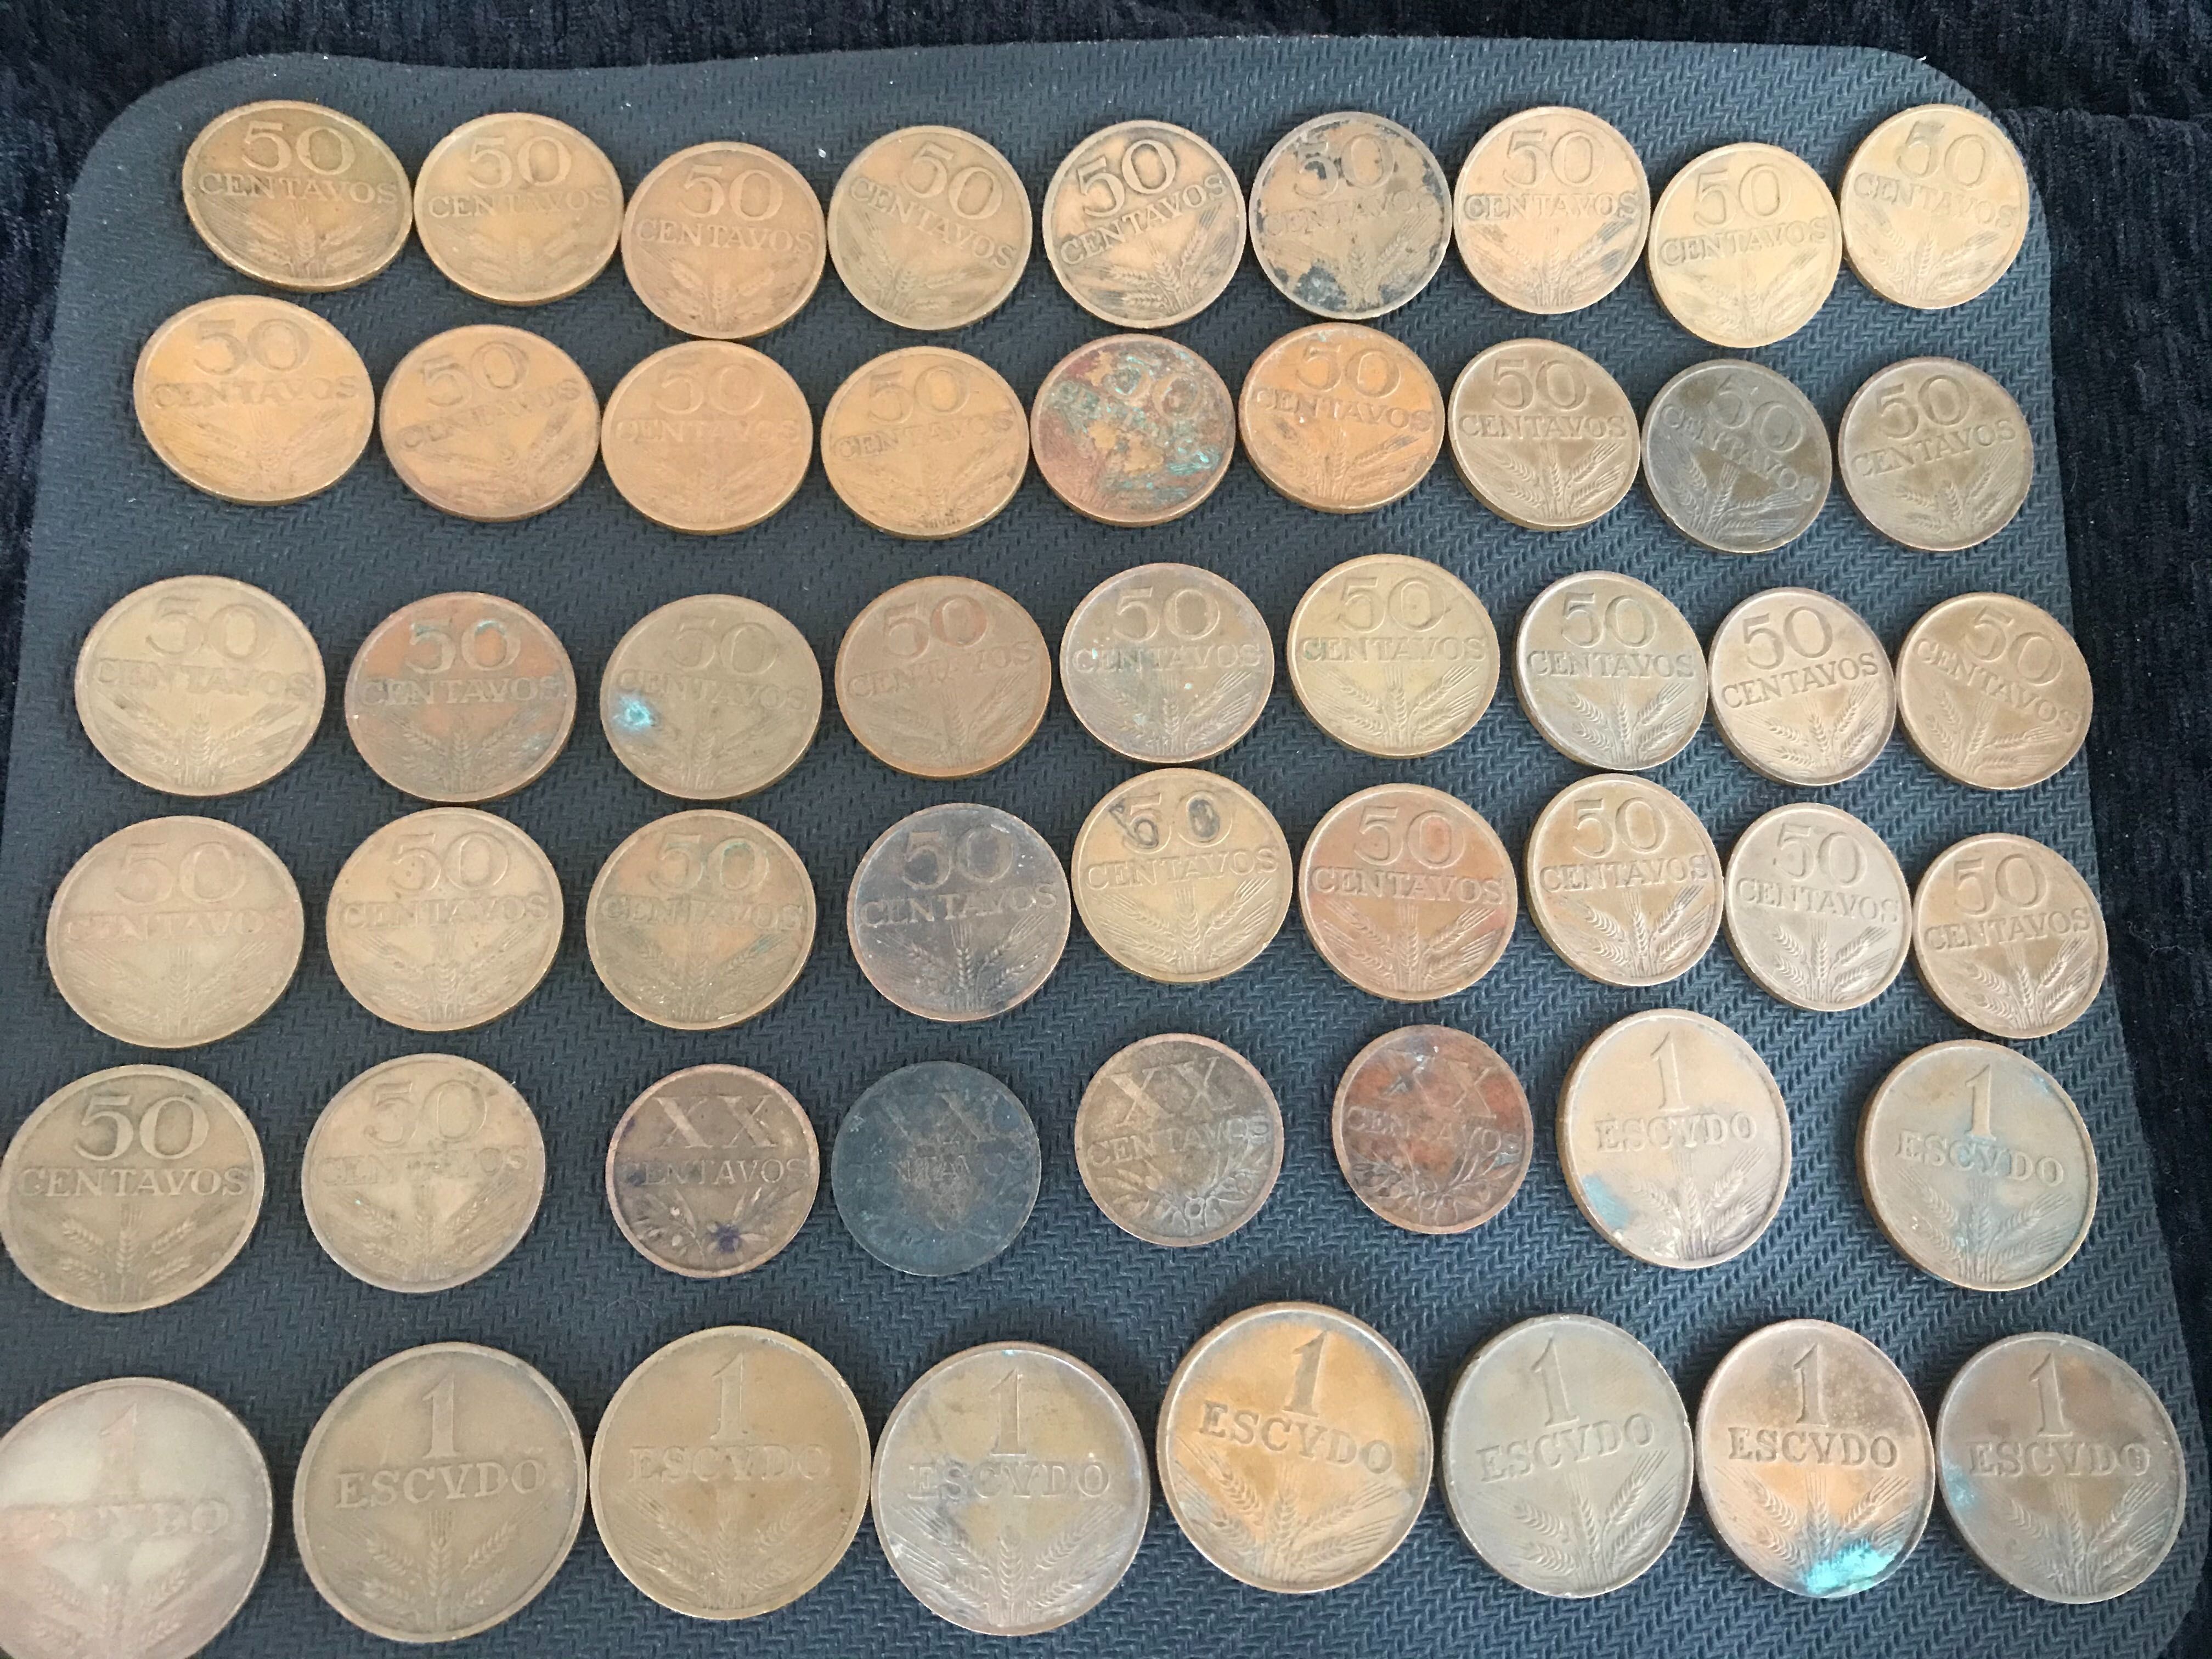 Lote Moedas XX centavos 50 centavos e 1 escudo de bronze